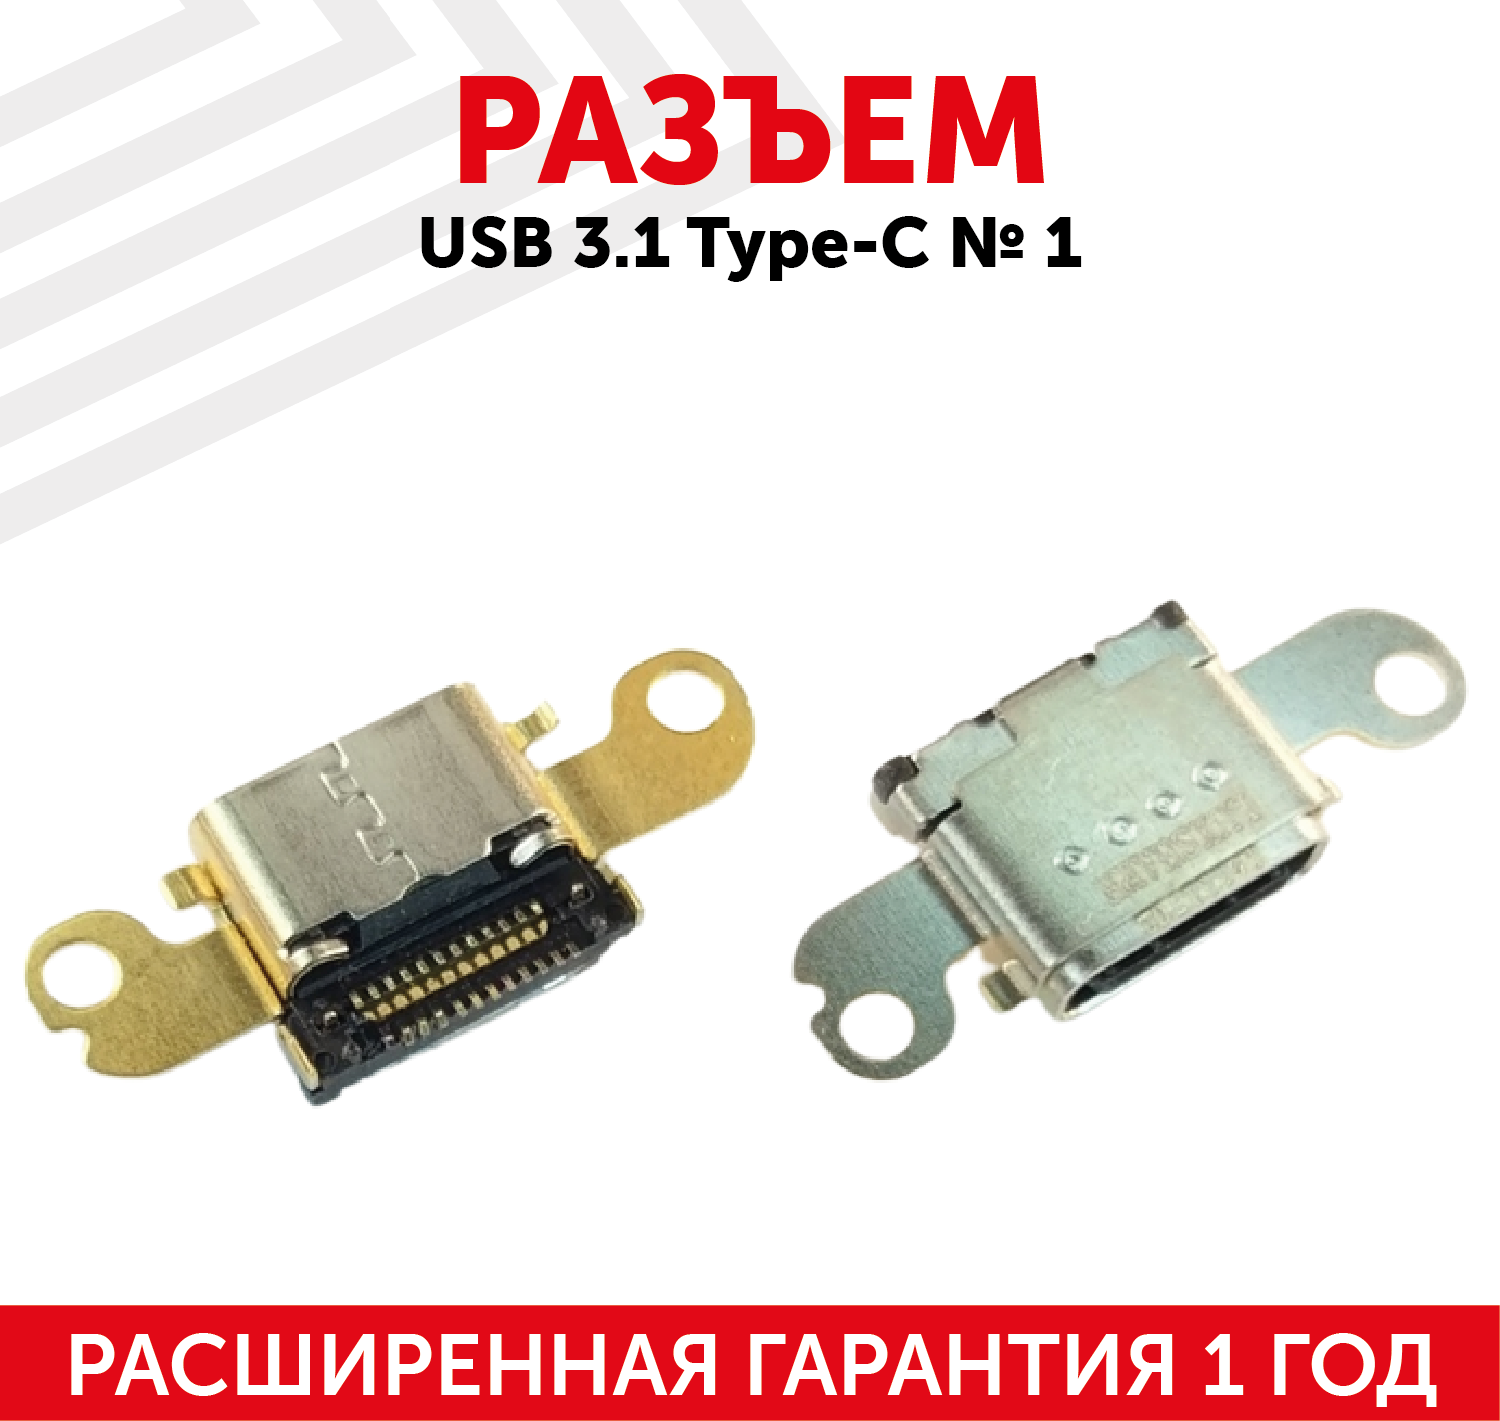 Разъем USB 3.1 Type-C № 1